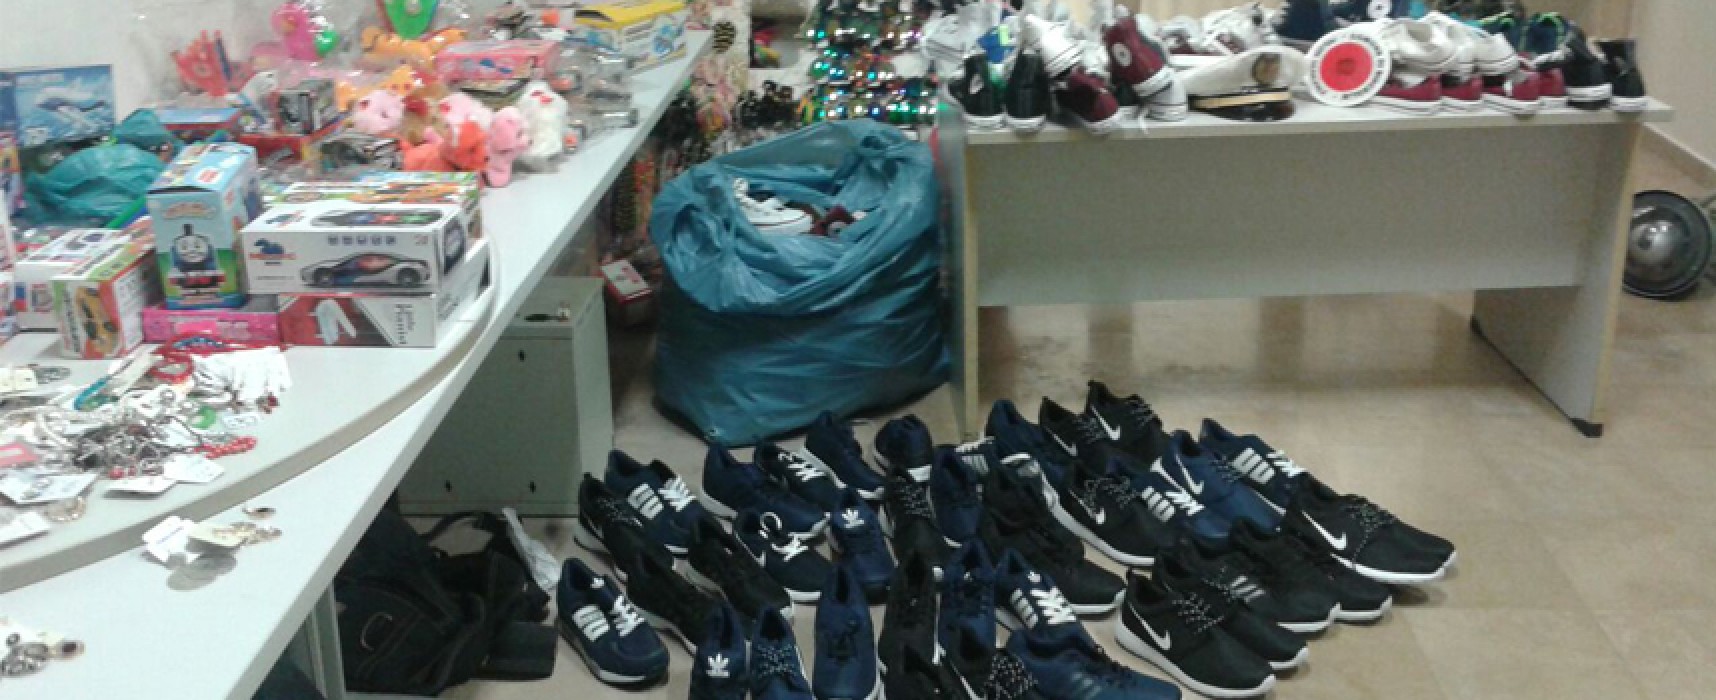 Controllo della Polizia Municipale al mercato: sequestrate scarpe, bigiotteria e giocattoli / FOTO